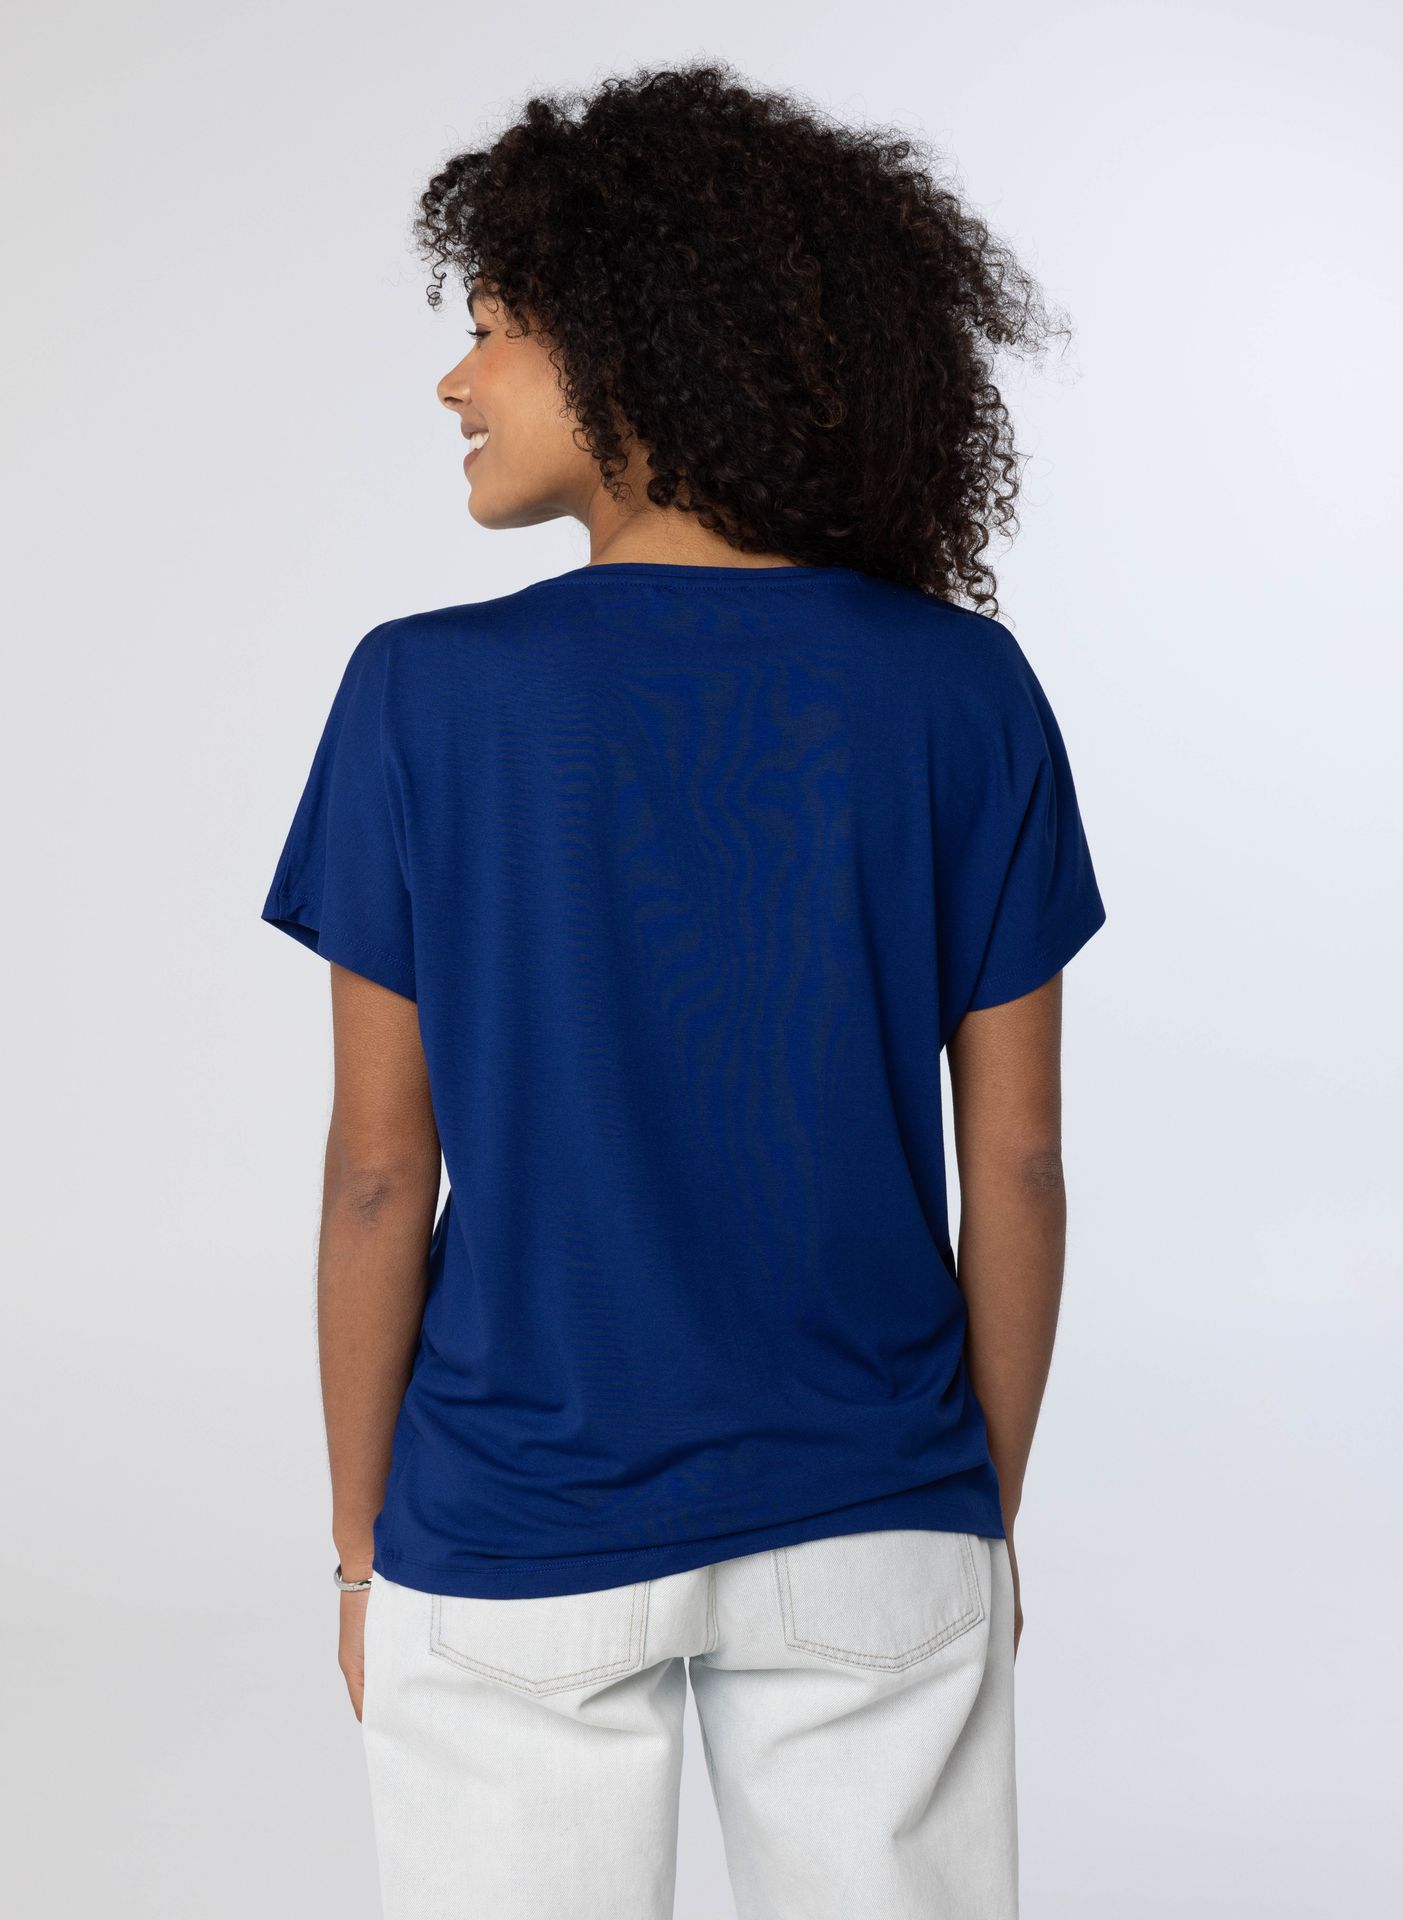 Norah Shirt Maral kobaltblauw royal blue 208968-466